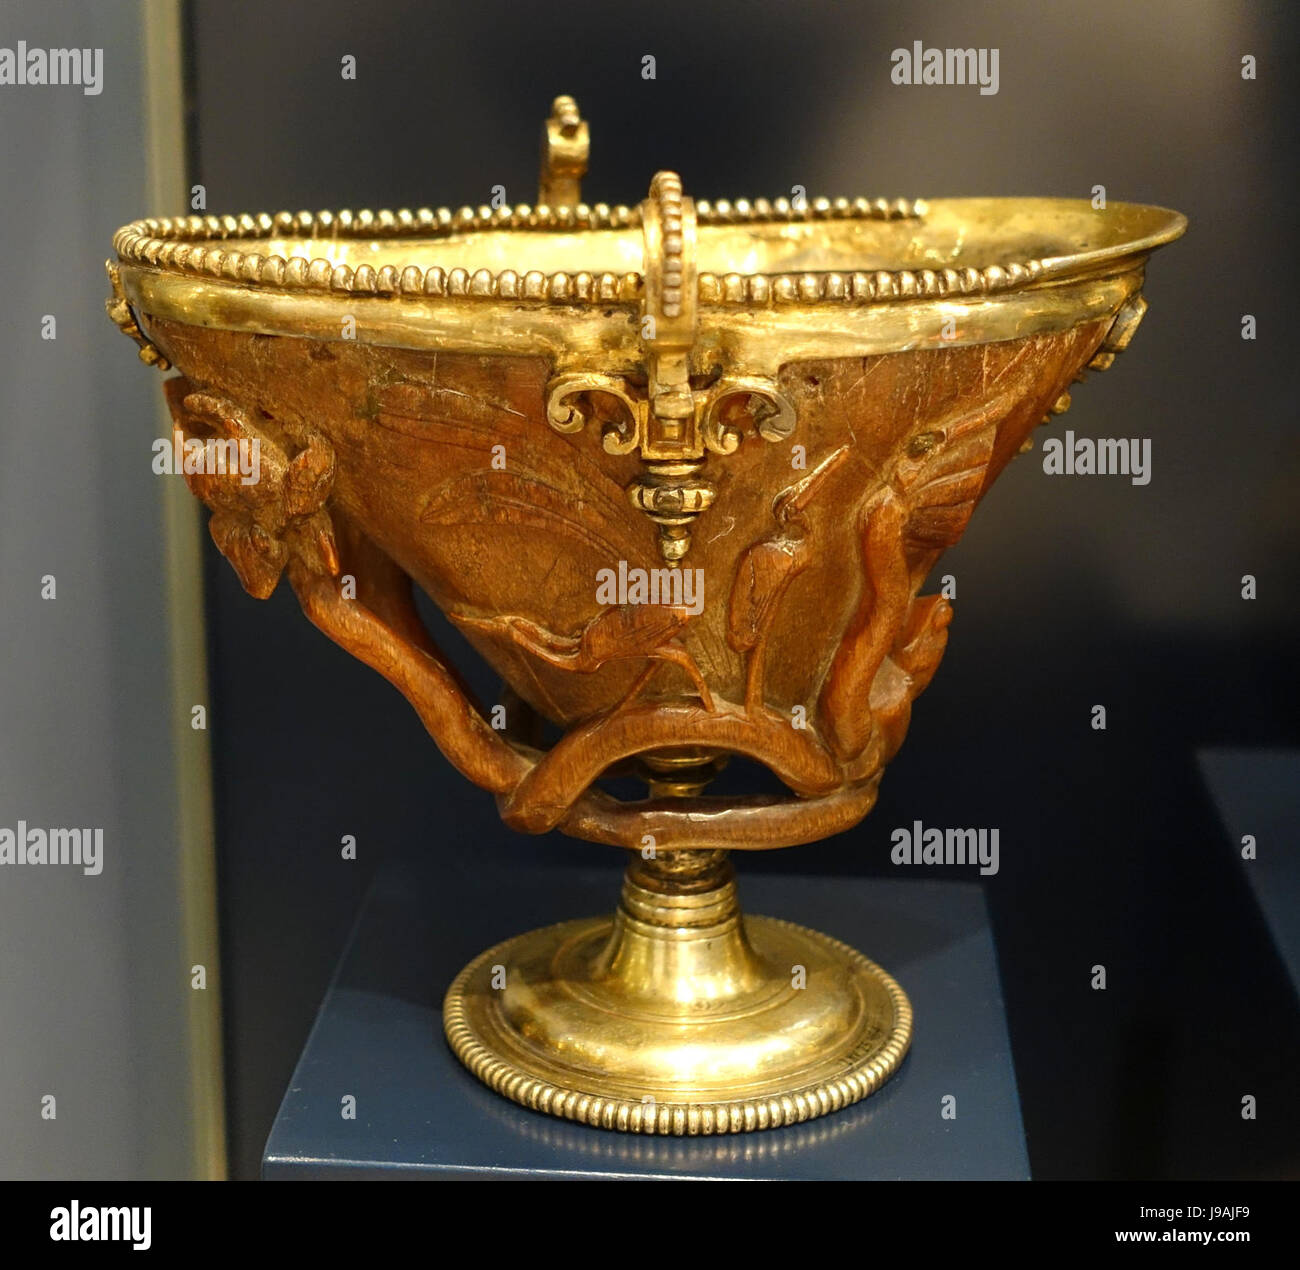 Corno di rinoceronte cup, Cina dinastia Ming, con unione in argento dorato  mount, fine del XVI inizio XVII secolo D.C. Museo Nacional de Artes  Decorativas Madrid, Spagna DSC08007 Foto stock - Alamy